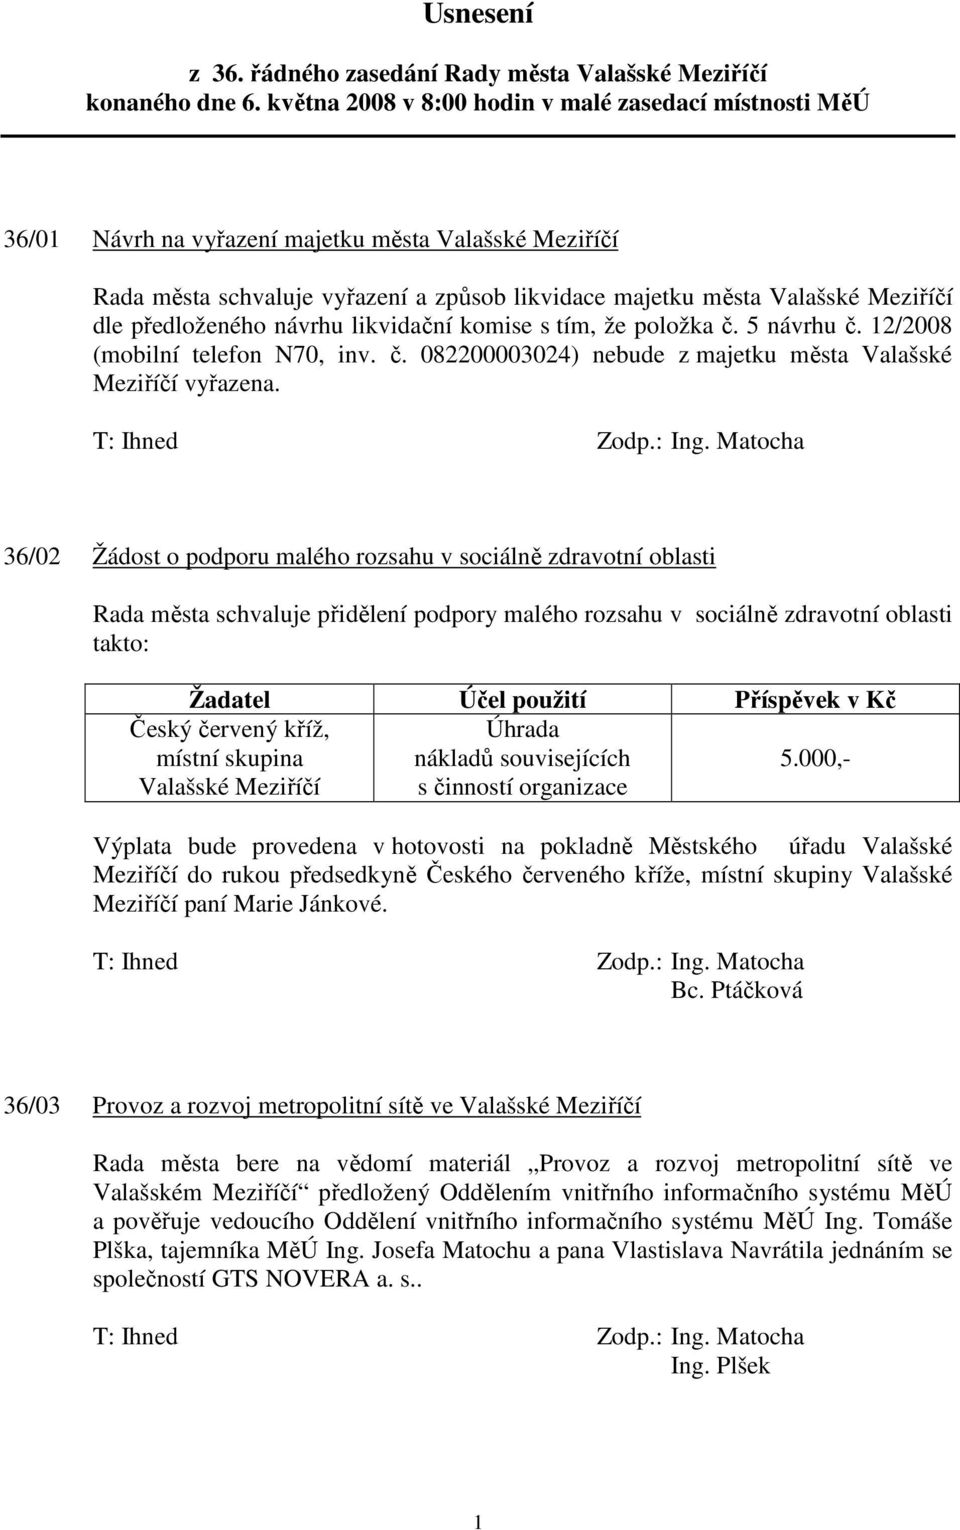 předloženého návrhu likvidační komise s tím, že položka č. 5 návrhu č. 12/2008 (mobilní telefon N70, inv. č. 082200003024) nebude z majetku města Valašské Meziříčí vyřazena.